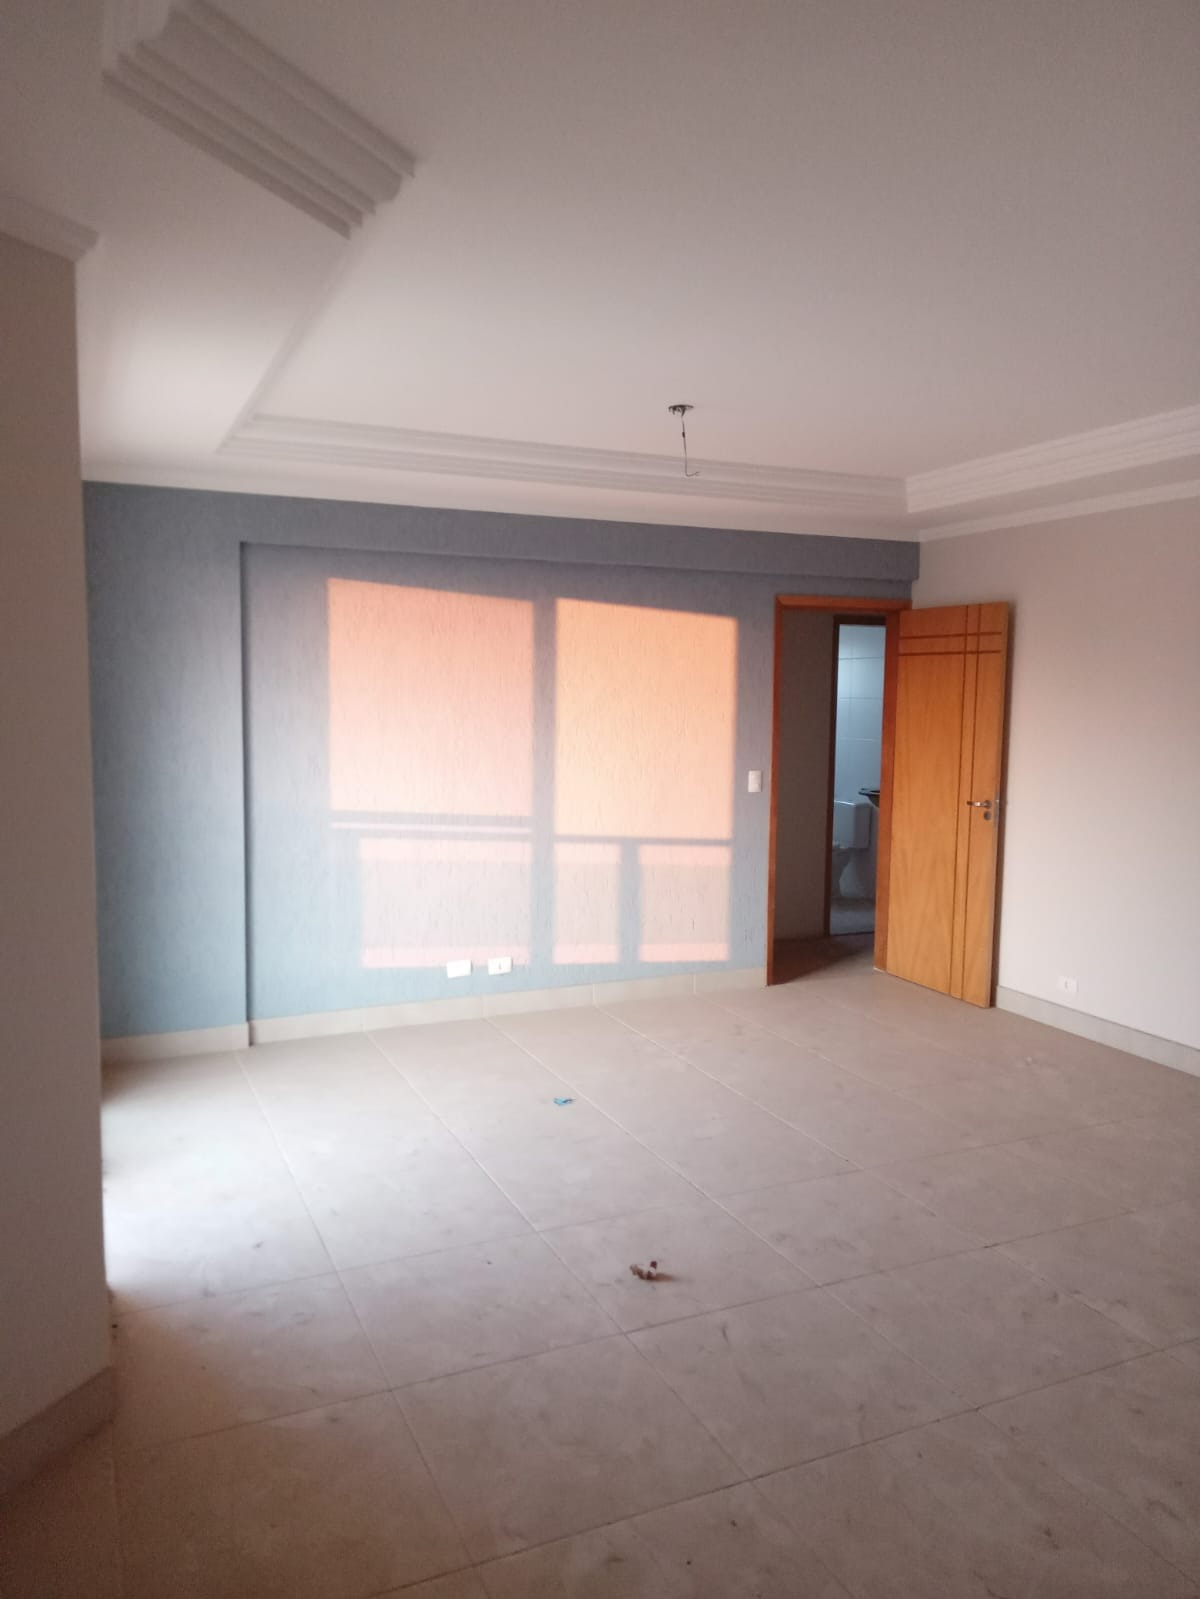 Apartamento de 86 m² com 3 dormitórios no Edifício Nena Moncayo - Sorocaba/SP